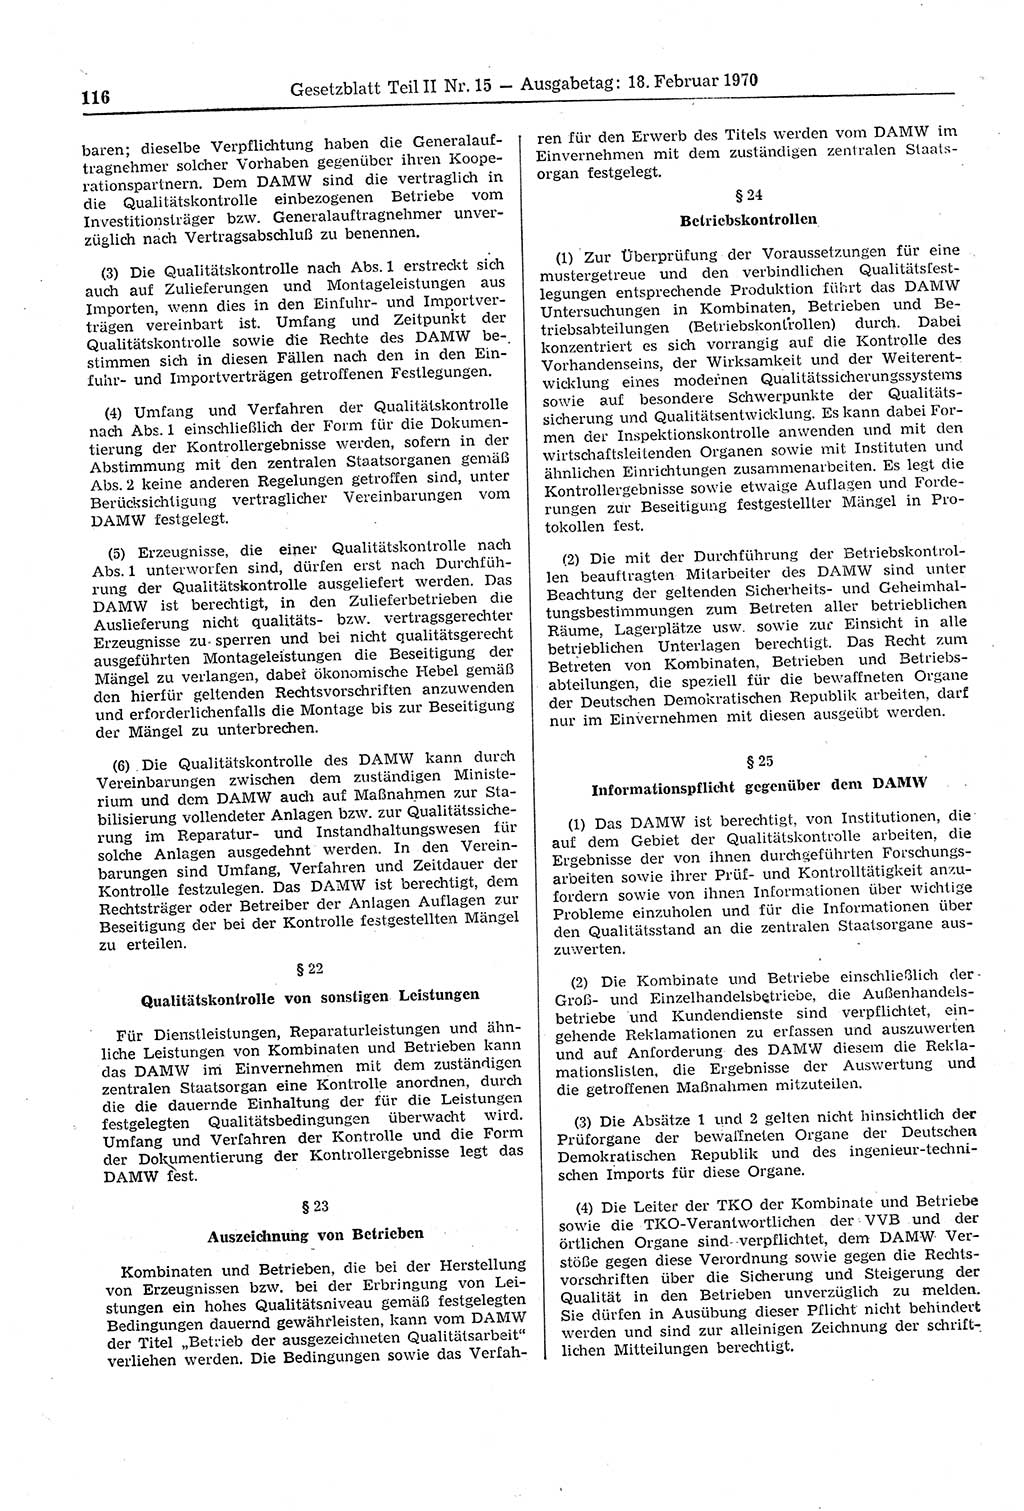 Gesetzblatt (GBl.) der Deutschen Demokratischen Republik (DDR) Teil ⅠⅠ 1970, Seite 116 (GBl. DDR ⅠⅠ 1970, S. 116)